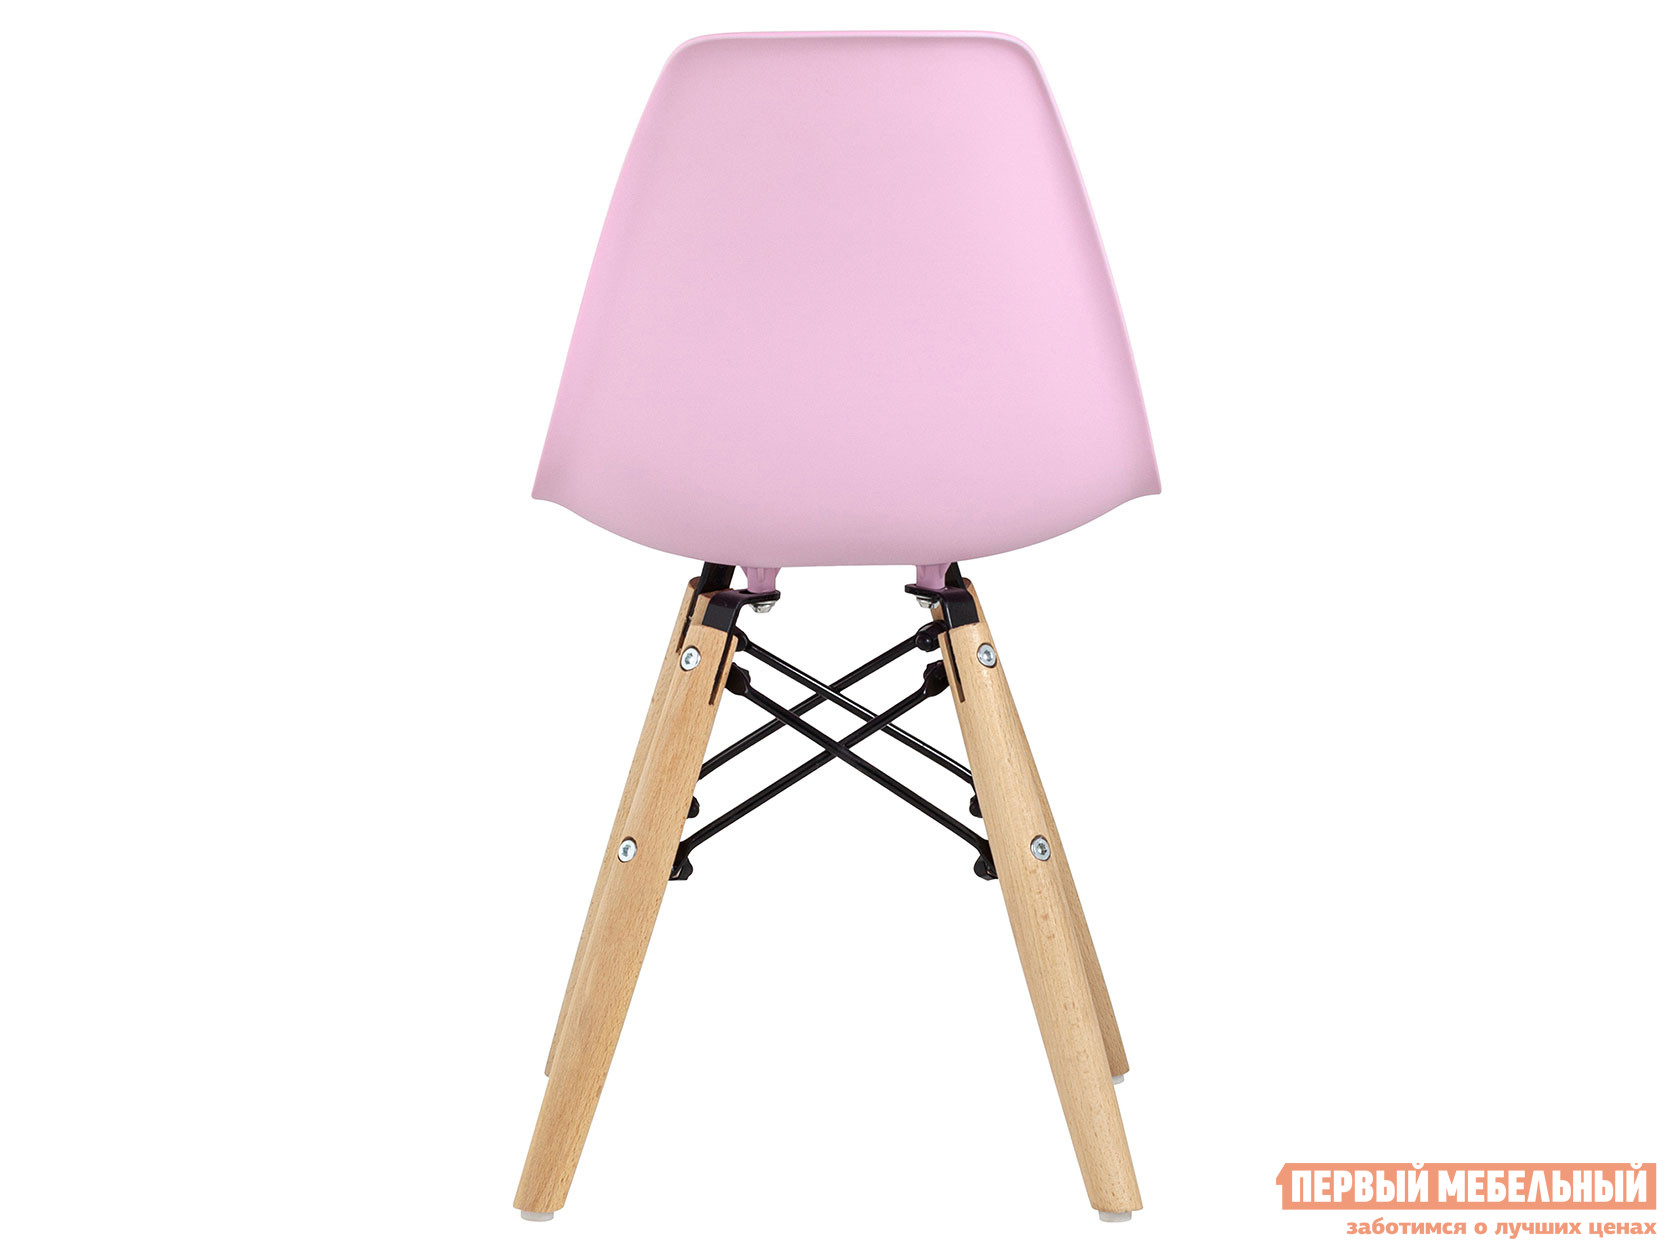 Столик и стульчик  Имс 8056 Розовый от Первый Мебельный